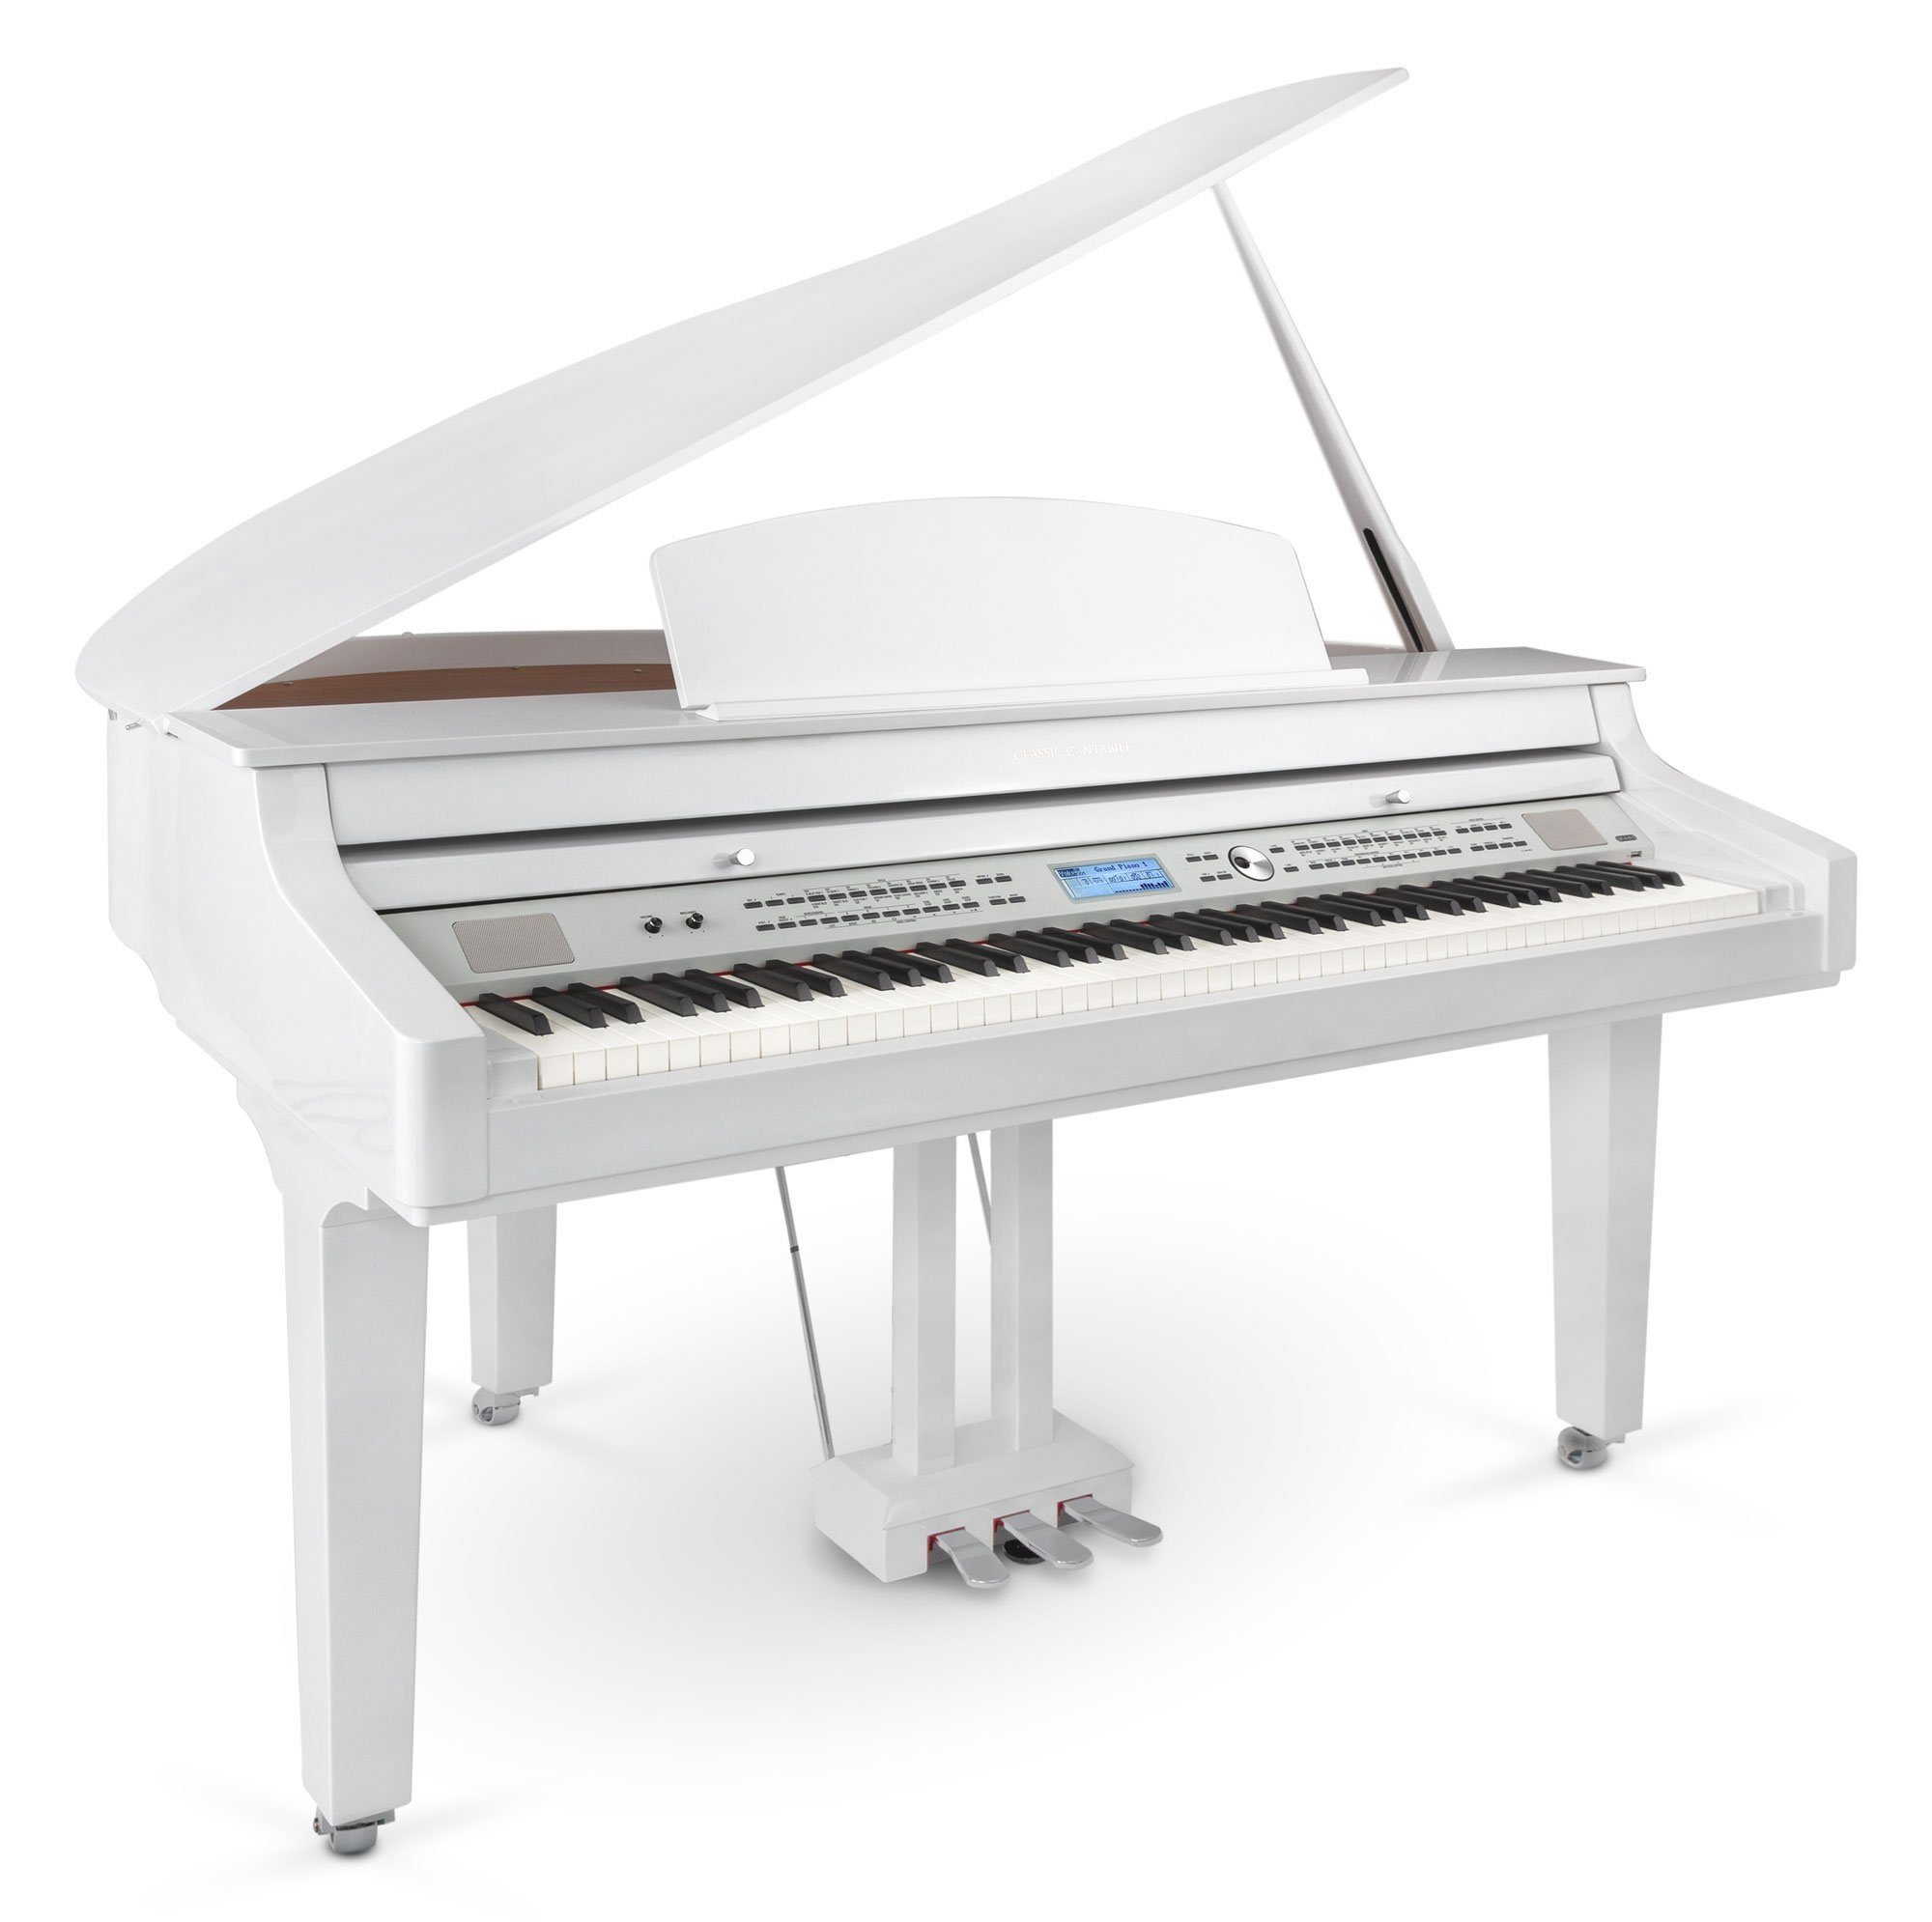 Classic Cantabile Digital Piano GP-A 810 Digitalflügel Grand Piano 88  Tasten mit Hammermechanik, Layer-, Split- und Twinova-Piano-Funktion,  Bluetooth, USB MIDI